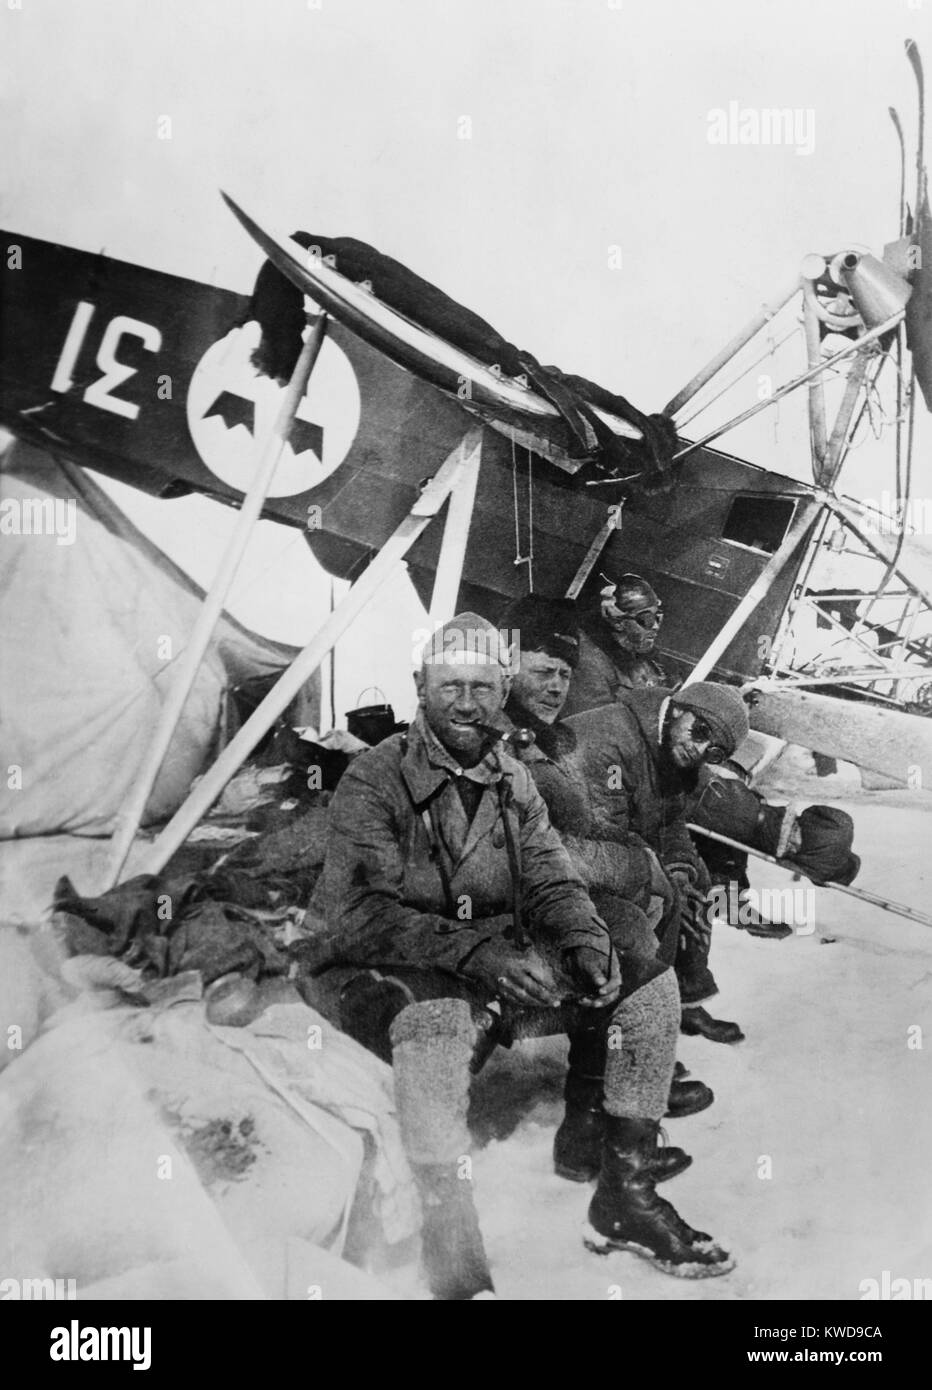 Aviator, Einor suédois Lundborg avec les survivants de l'accident du dirigeable ITALIA. Lundborg (le plus proche de la caméra) sauvé, chef de l'expédition de Nobile, à partir d'une rédaction d'écoulement glaciaire. Par la suite, il s'est écrasé son avion à être bloqués avec l'Italien survivants. L-R : à droite) Francesco Behounek, Giuseppe Biagi, Natale Cecioni, près de l'écrasement dans l'Arctique, 1928 BSLOC  2016 (10 137) Banque D'Images